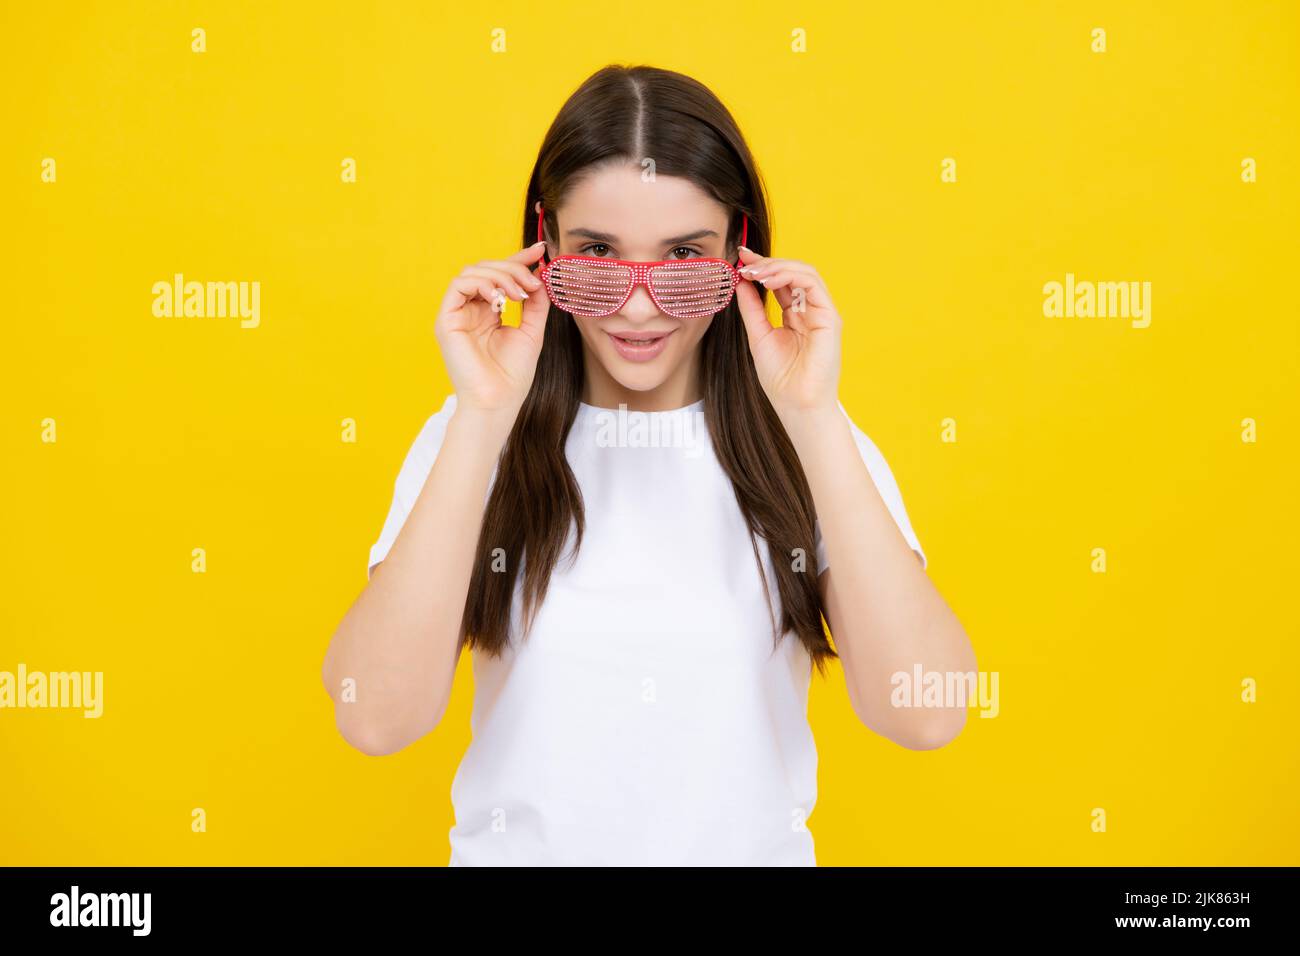 Frau fühlt sich cool und genial. Aufgeregt glücklich lustige junge Frau in Party-Brille auf einem gelben hellen Hintergrund. Stockfoto